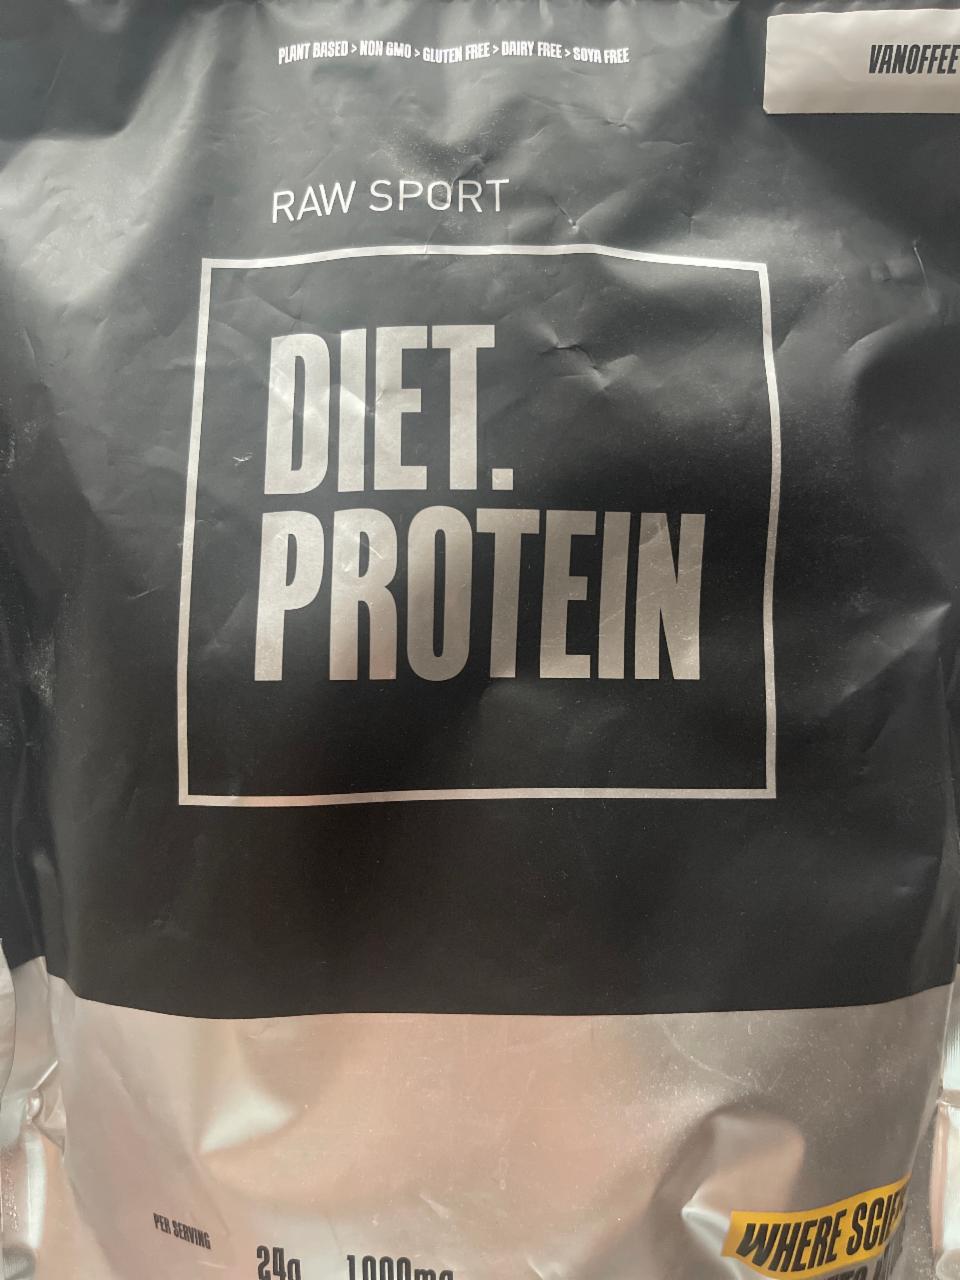 Fotografie - Diet Protein Vanoffee Raw Sport